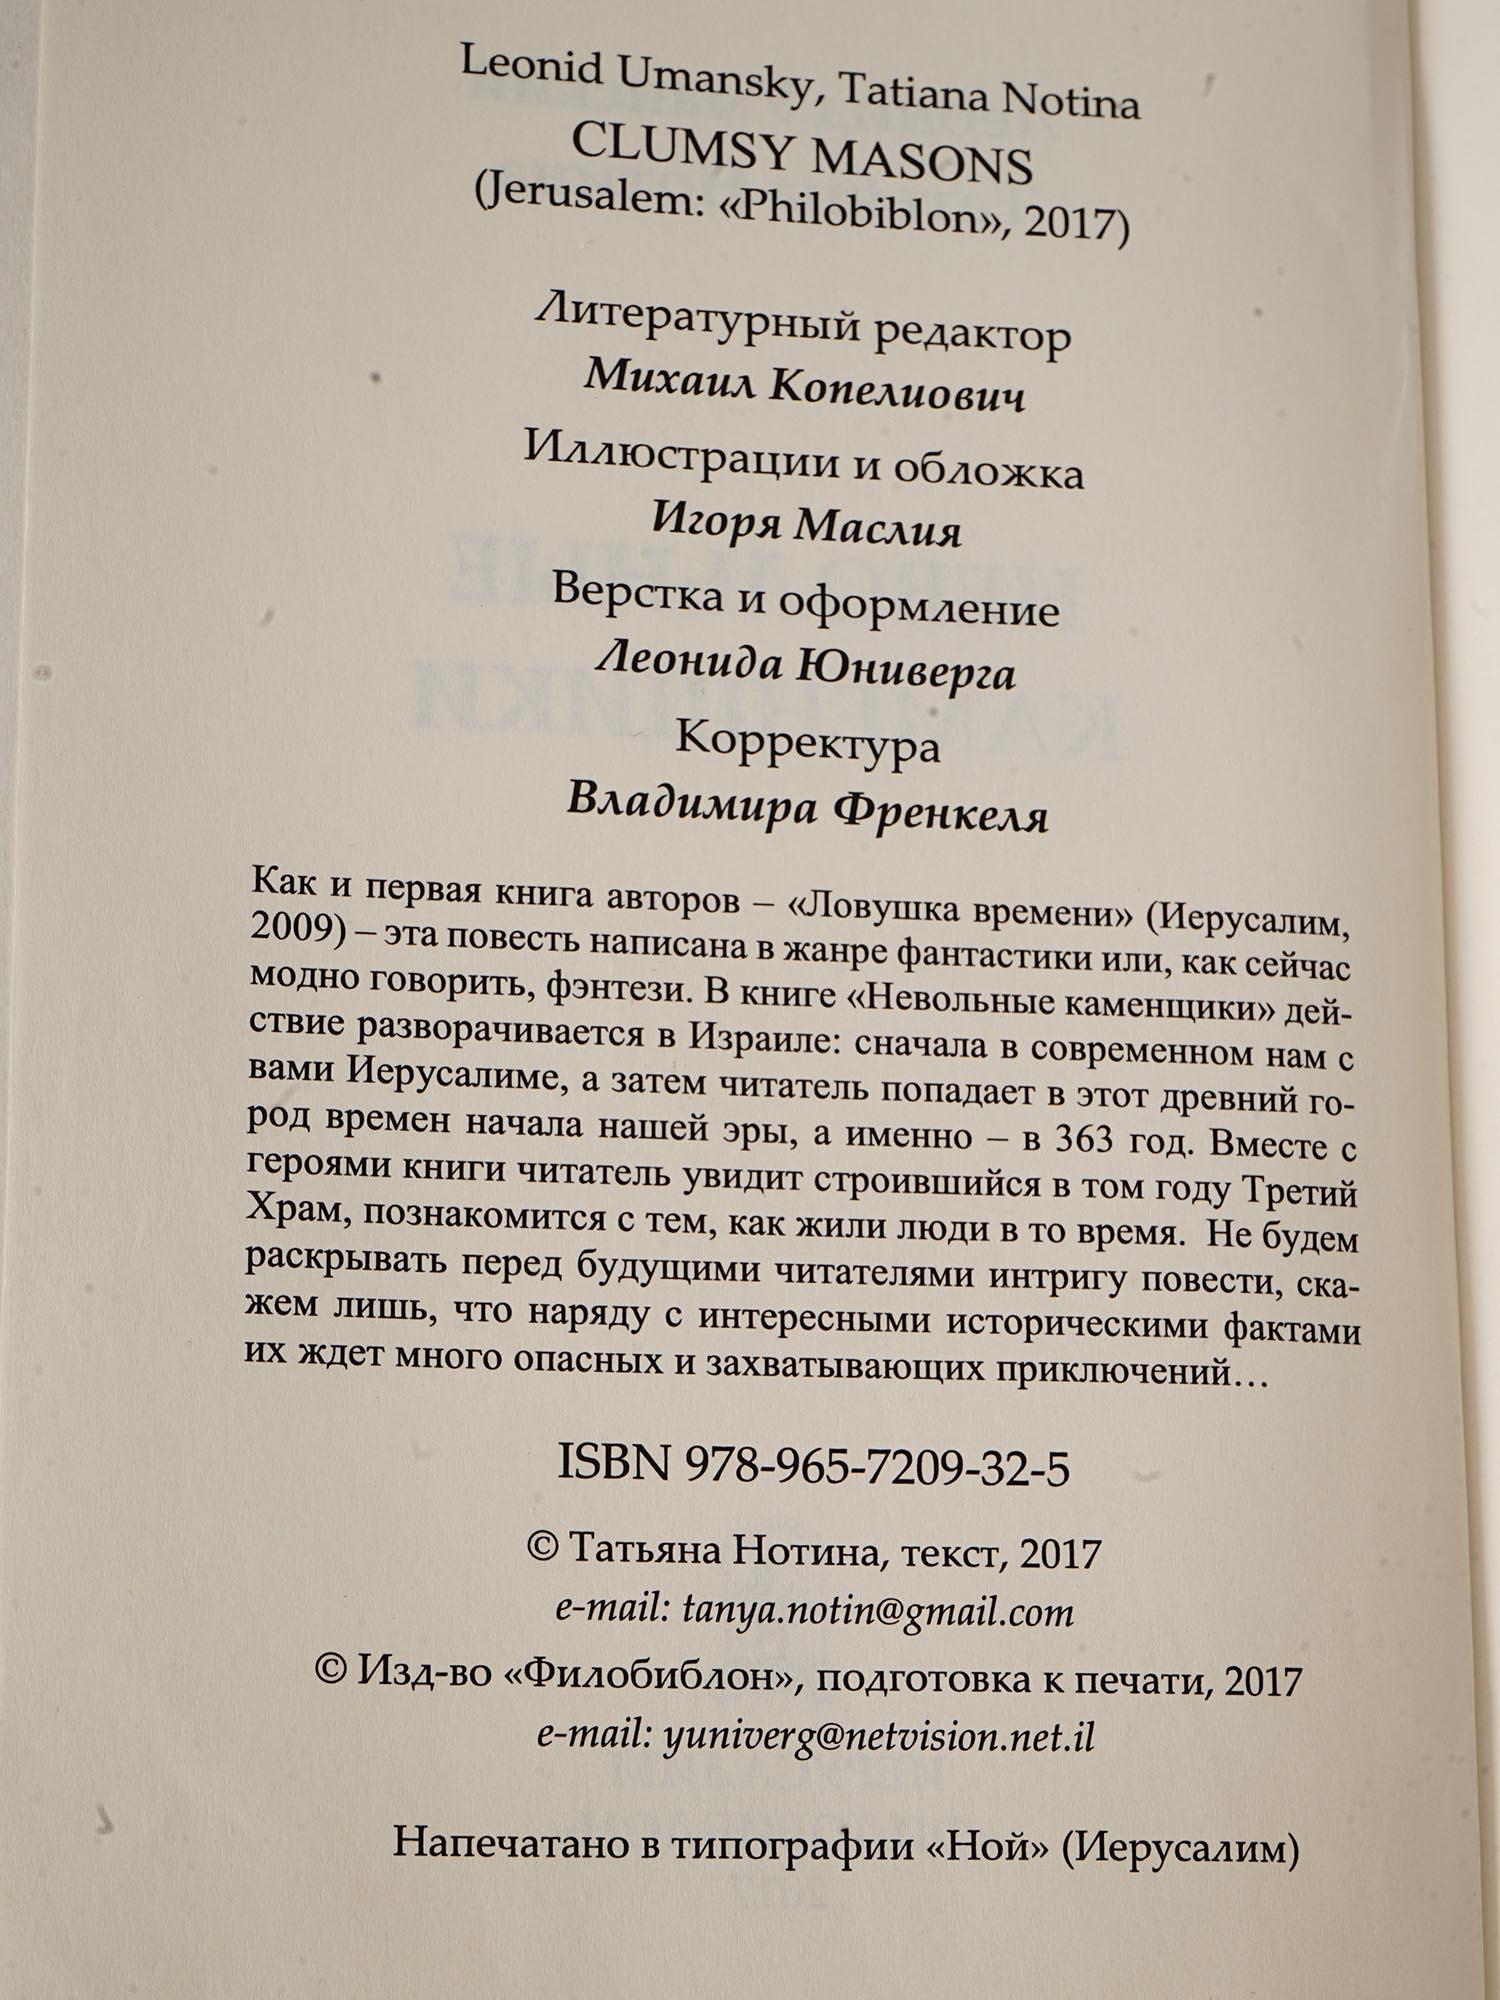 VINTAGE RUSSIAN BOOKS CHINGHIZ AITMATOV CASTANEDA PIC-33